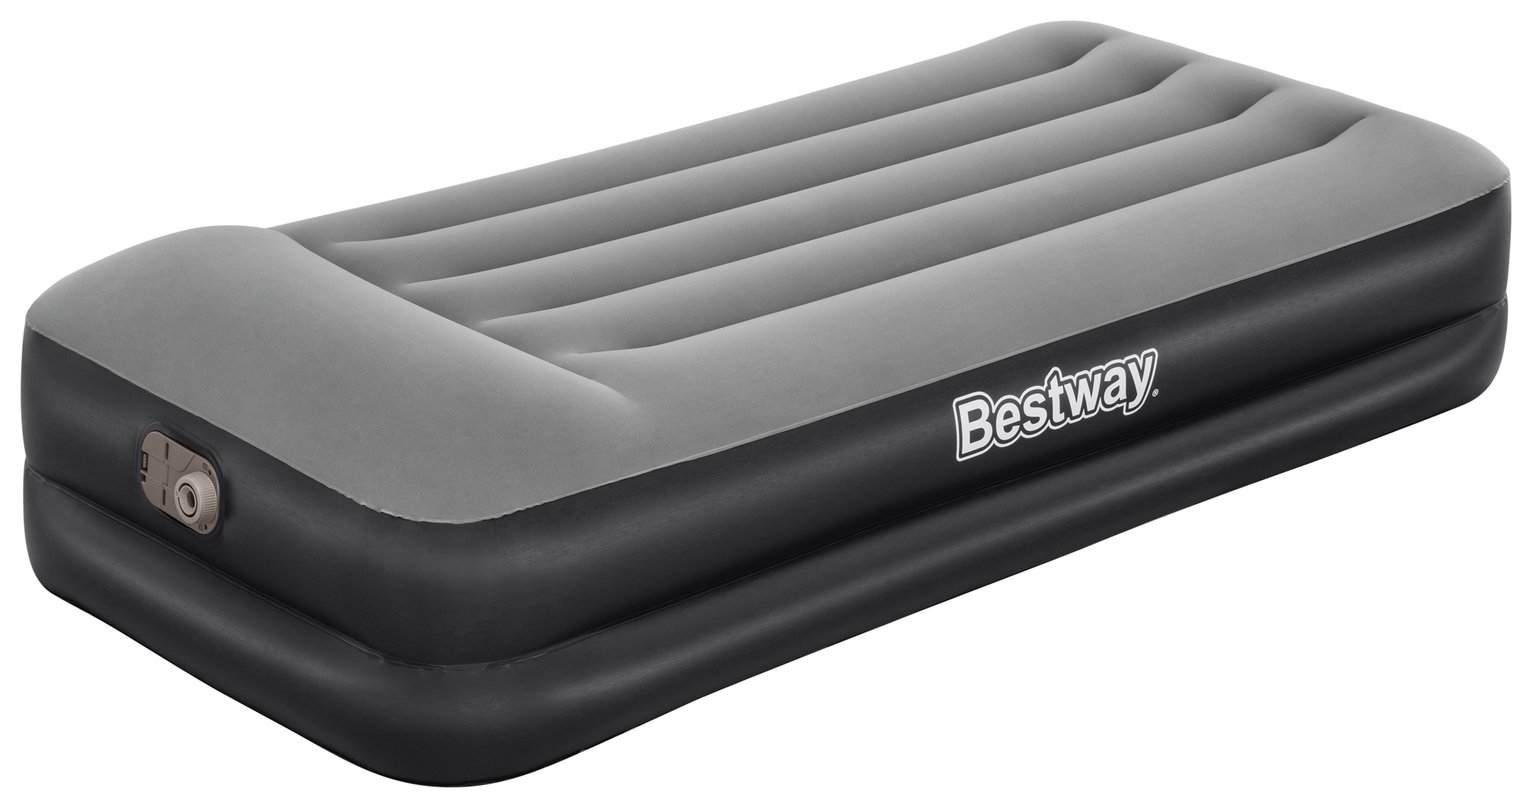 Bestway PVC Single Premium Raised Airbed